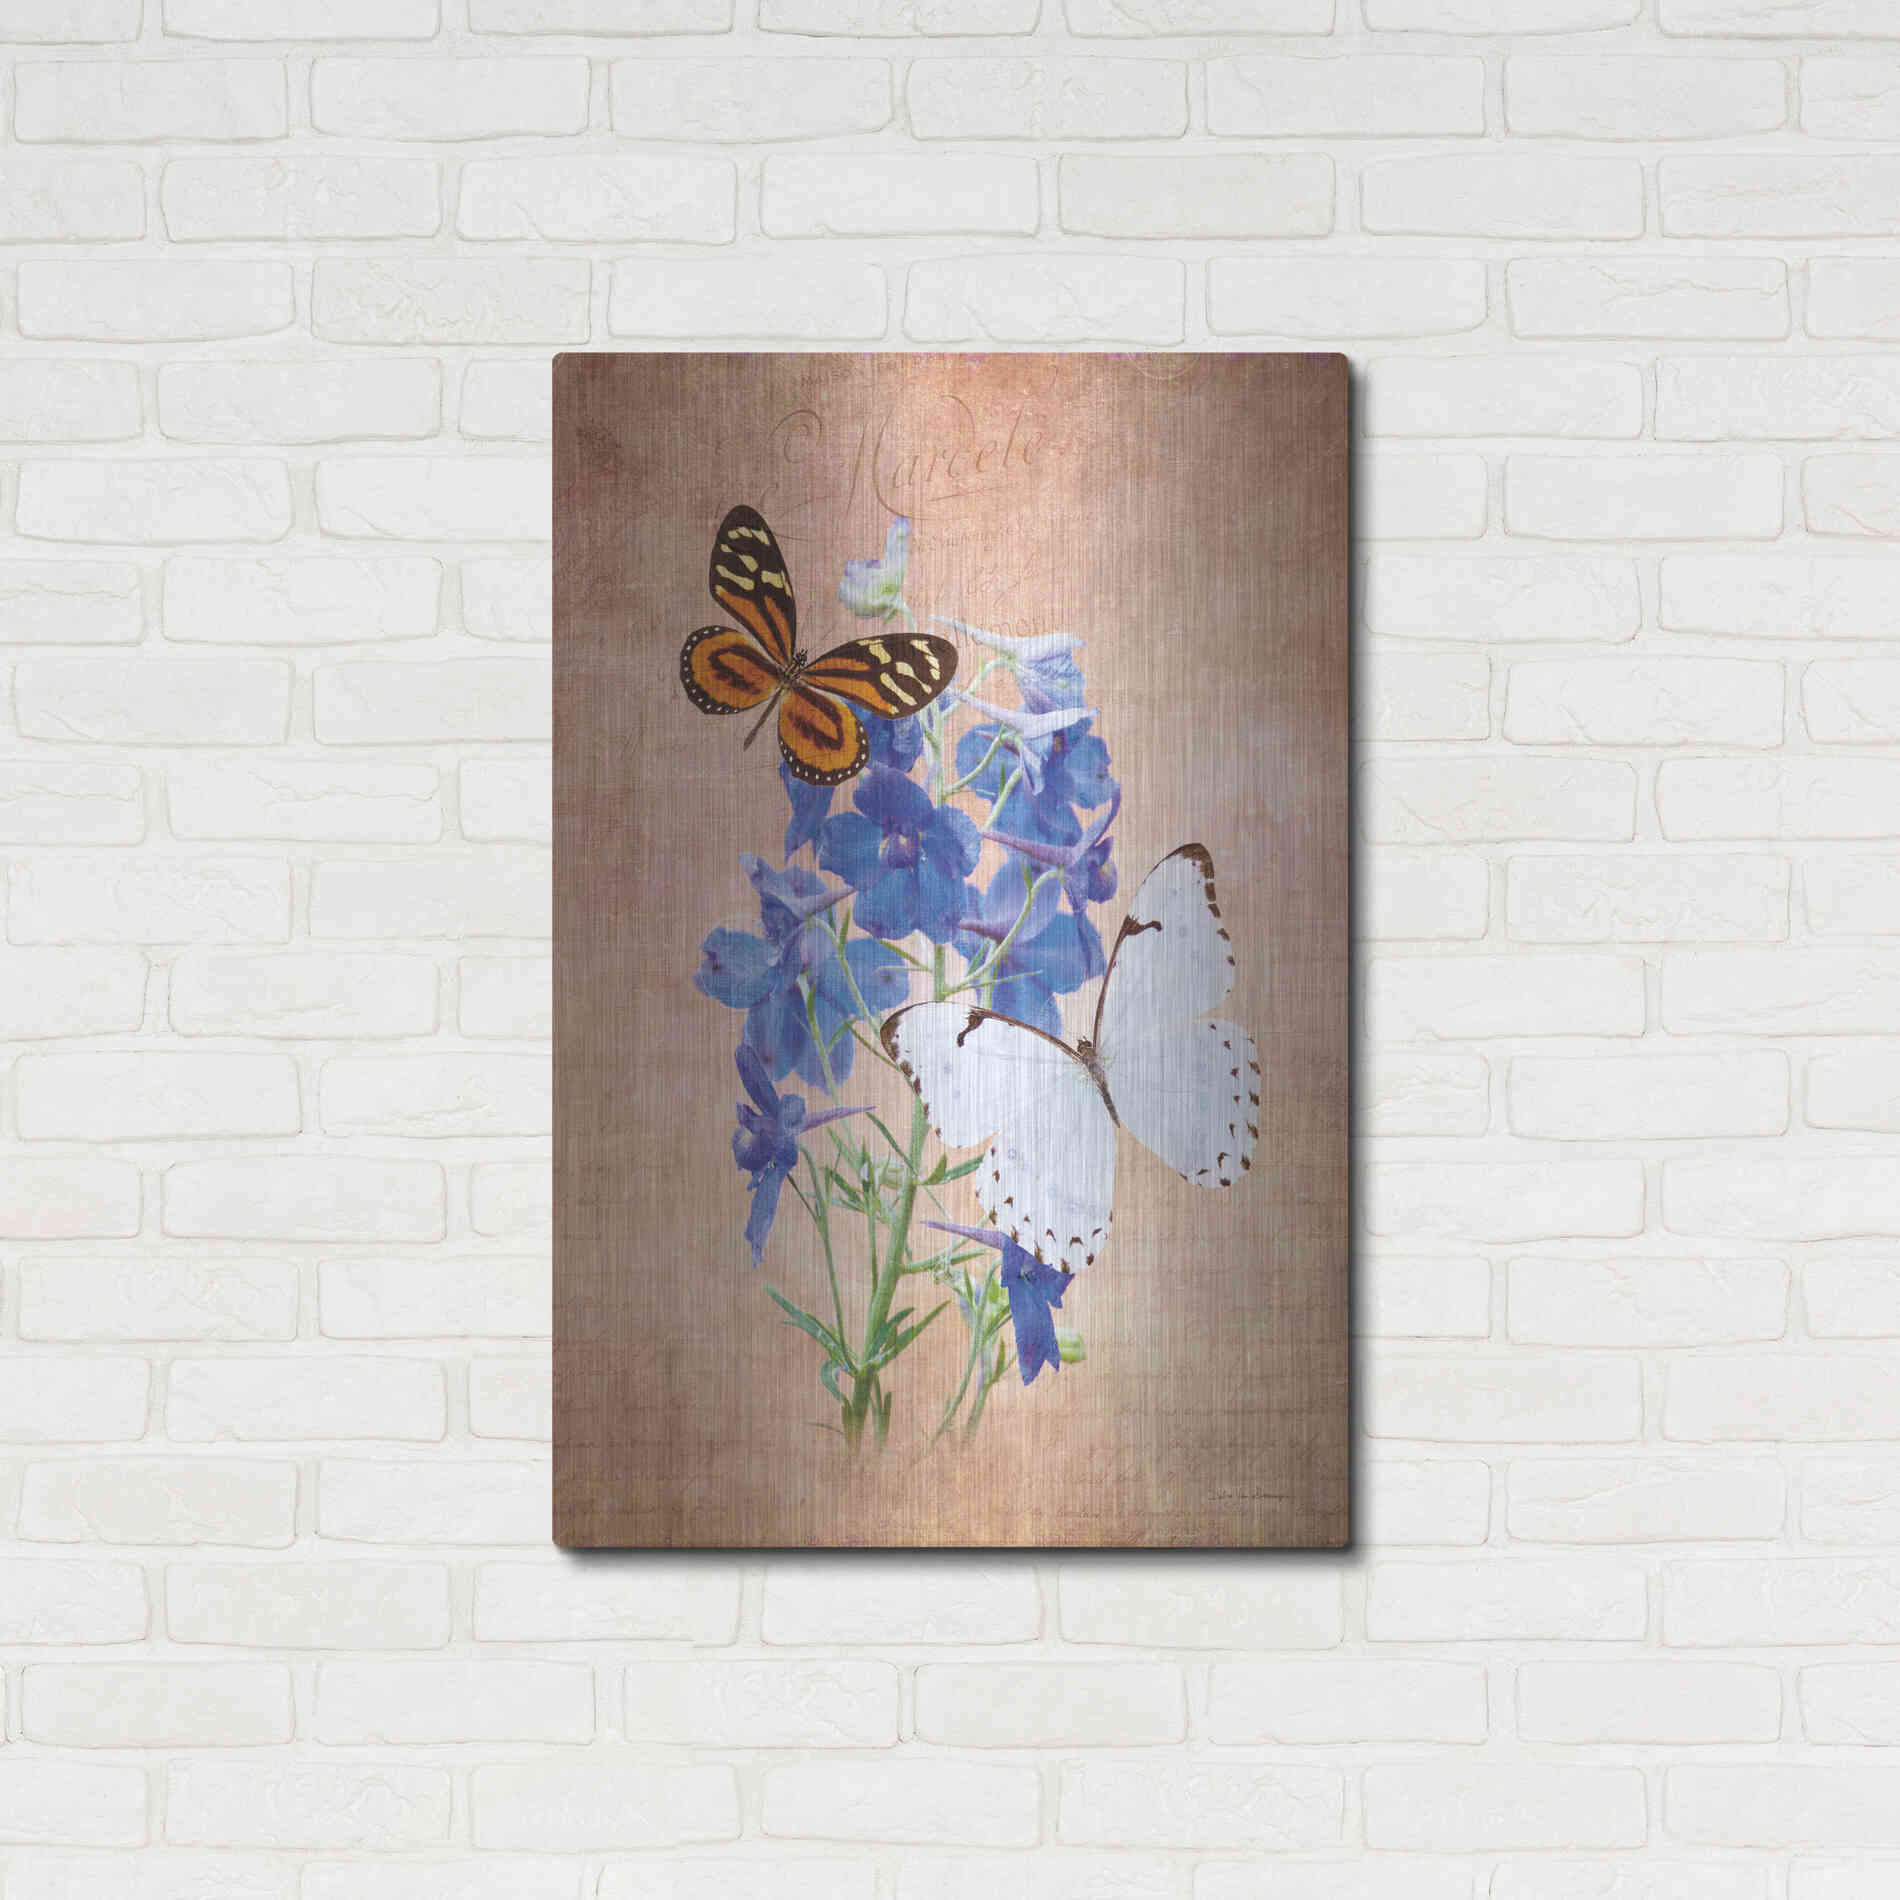 Luxe Metal Art 'Butterfly Botanical III' by Debra Van Swearingen, Metal Wall Art,24x36